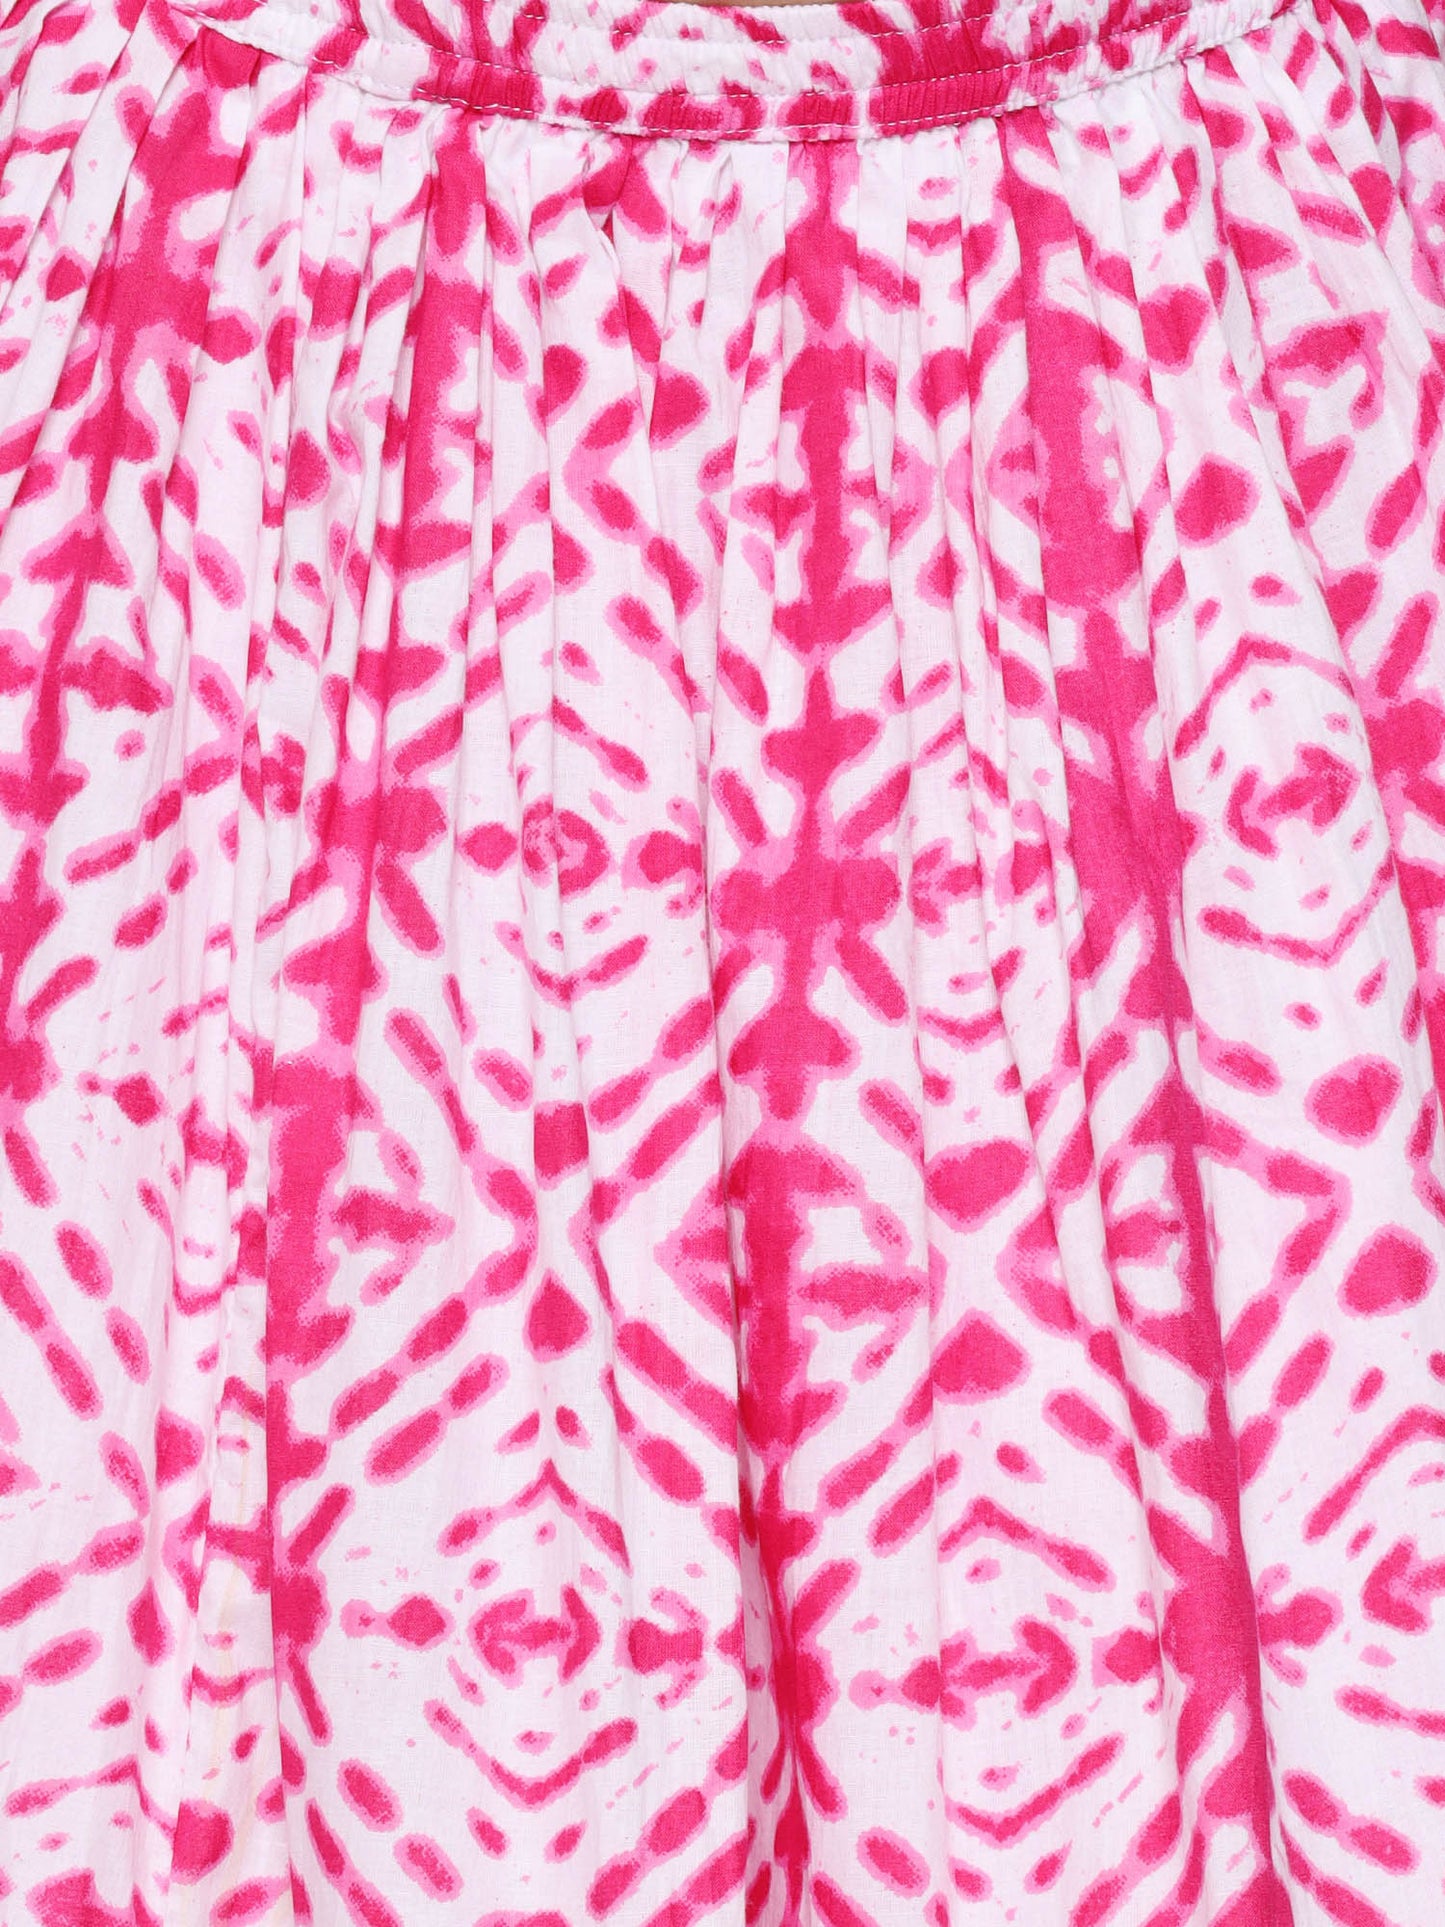 Kids Cotton Bandhani Print Sleeveless Pink Lehenga Choli Set For Girls